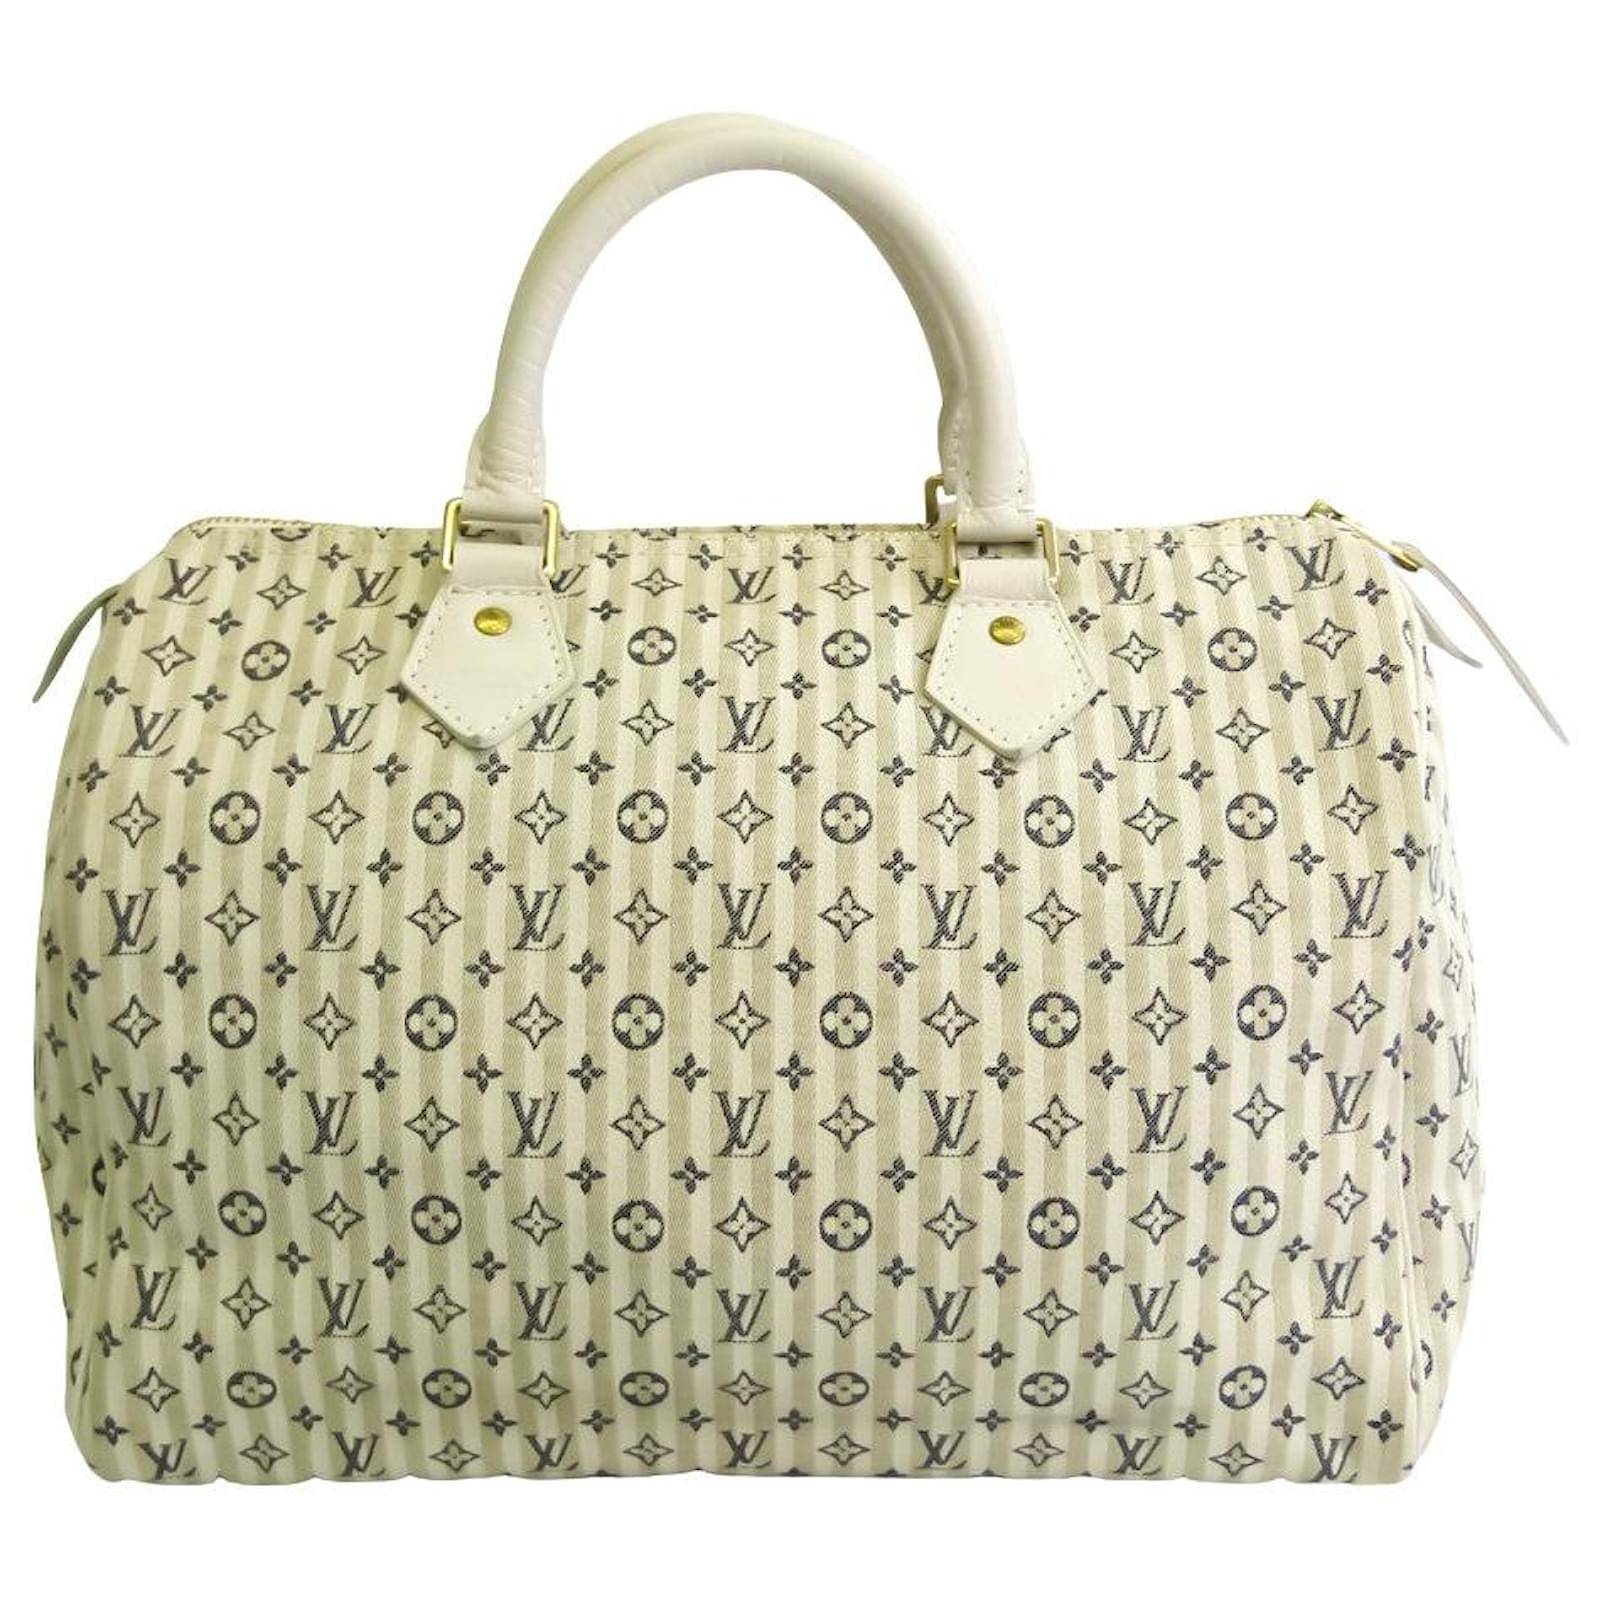 Handbags Louis Vuitton Louis Vuitton Speedy 30